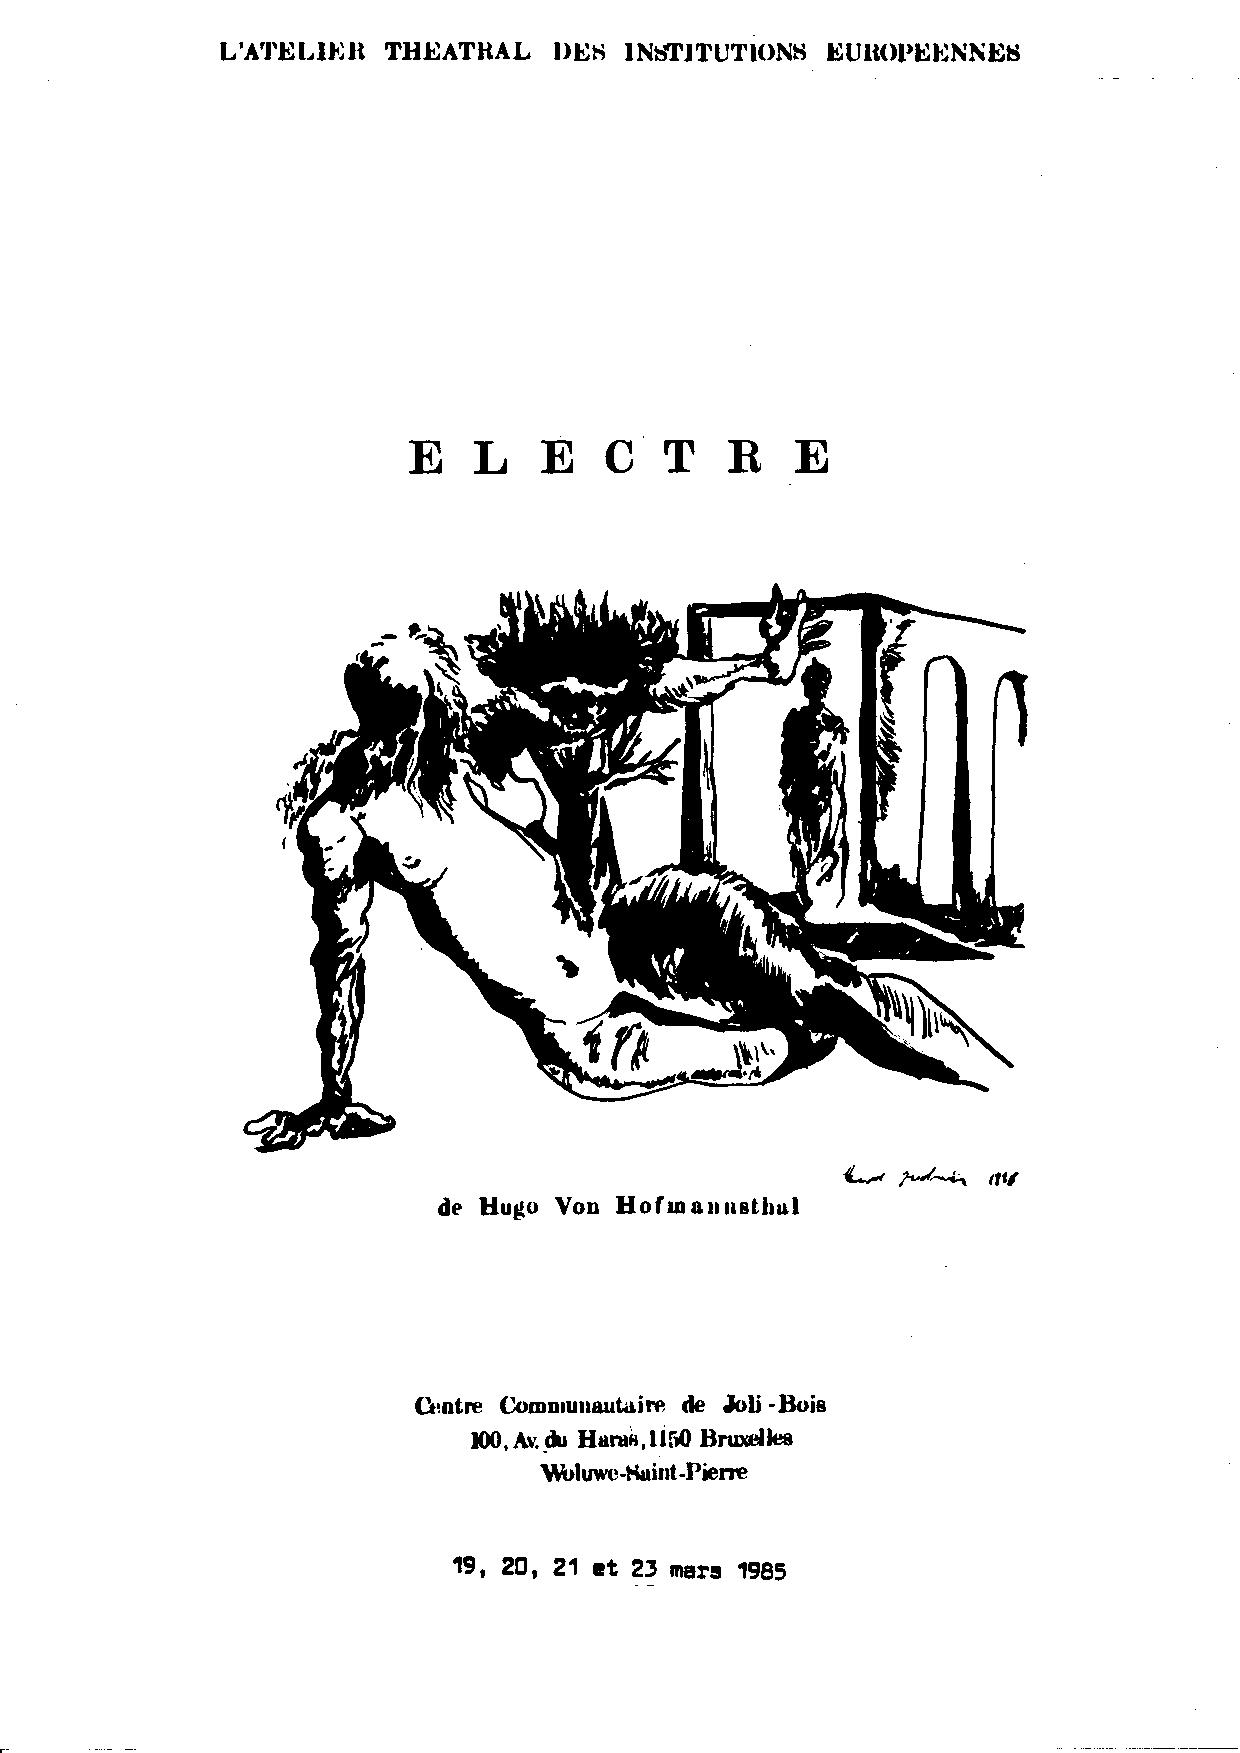 Electre affiche-page-001